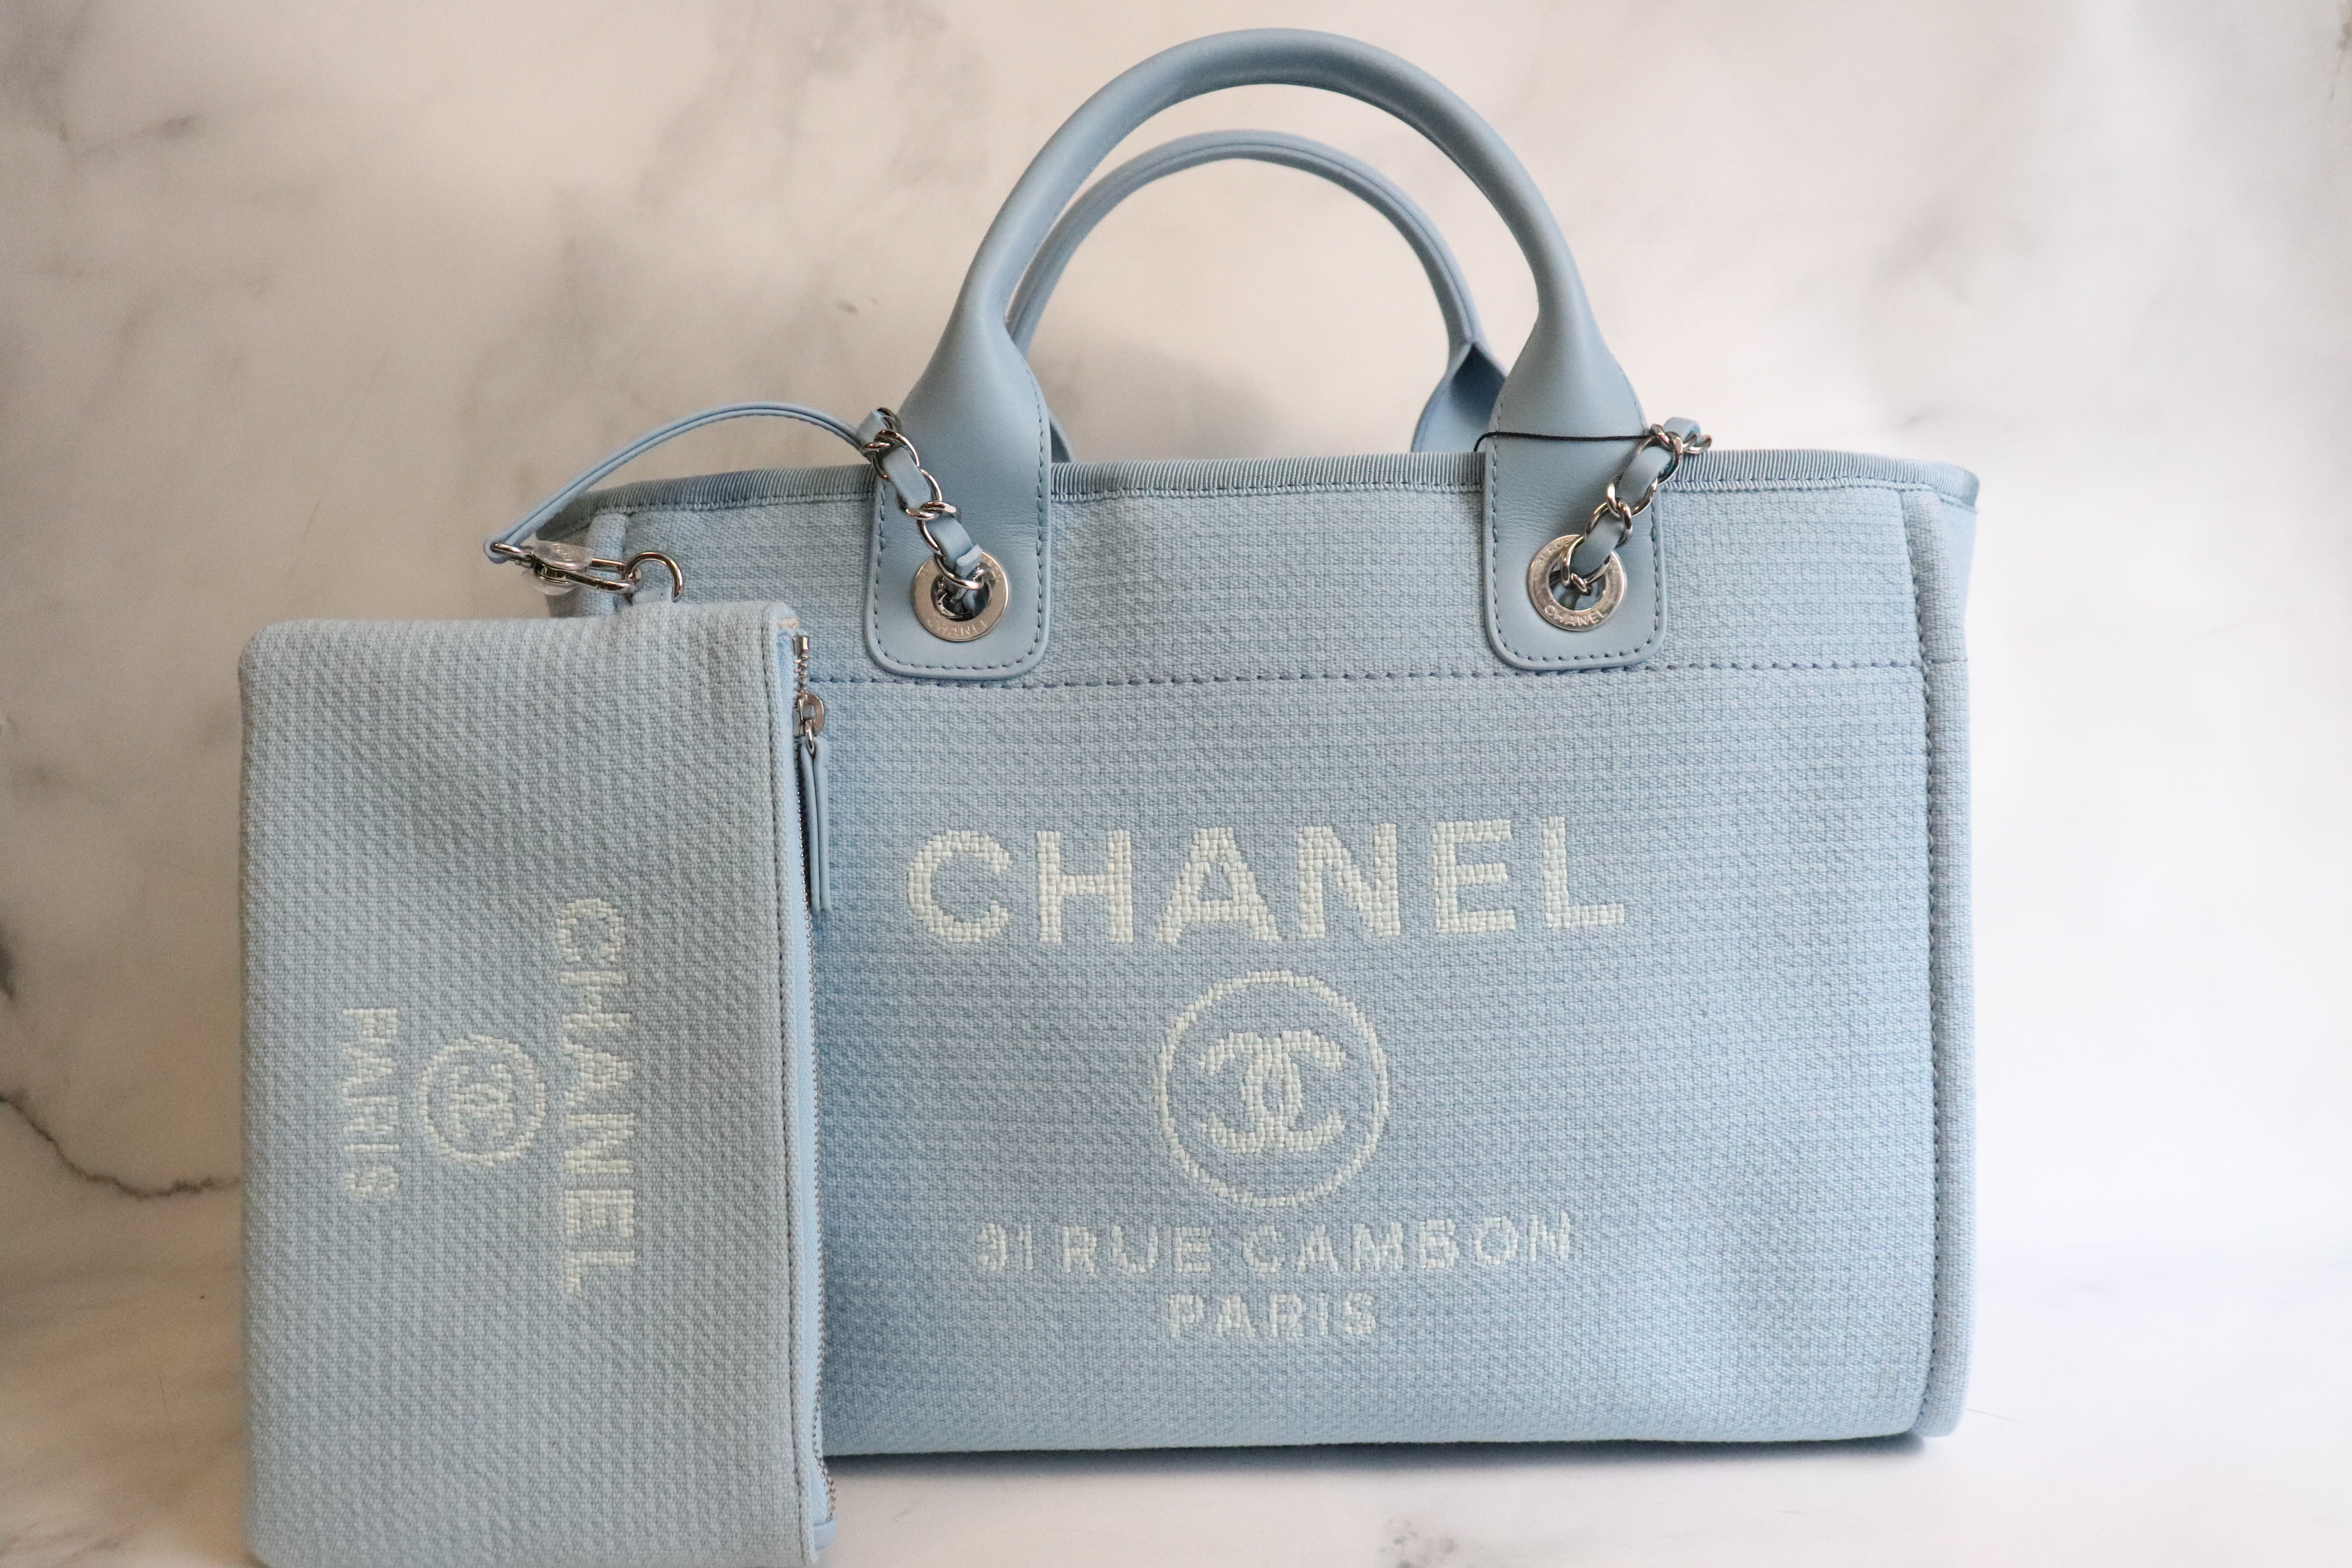 Chanel Deauville Handbag 402200